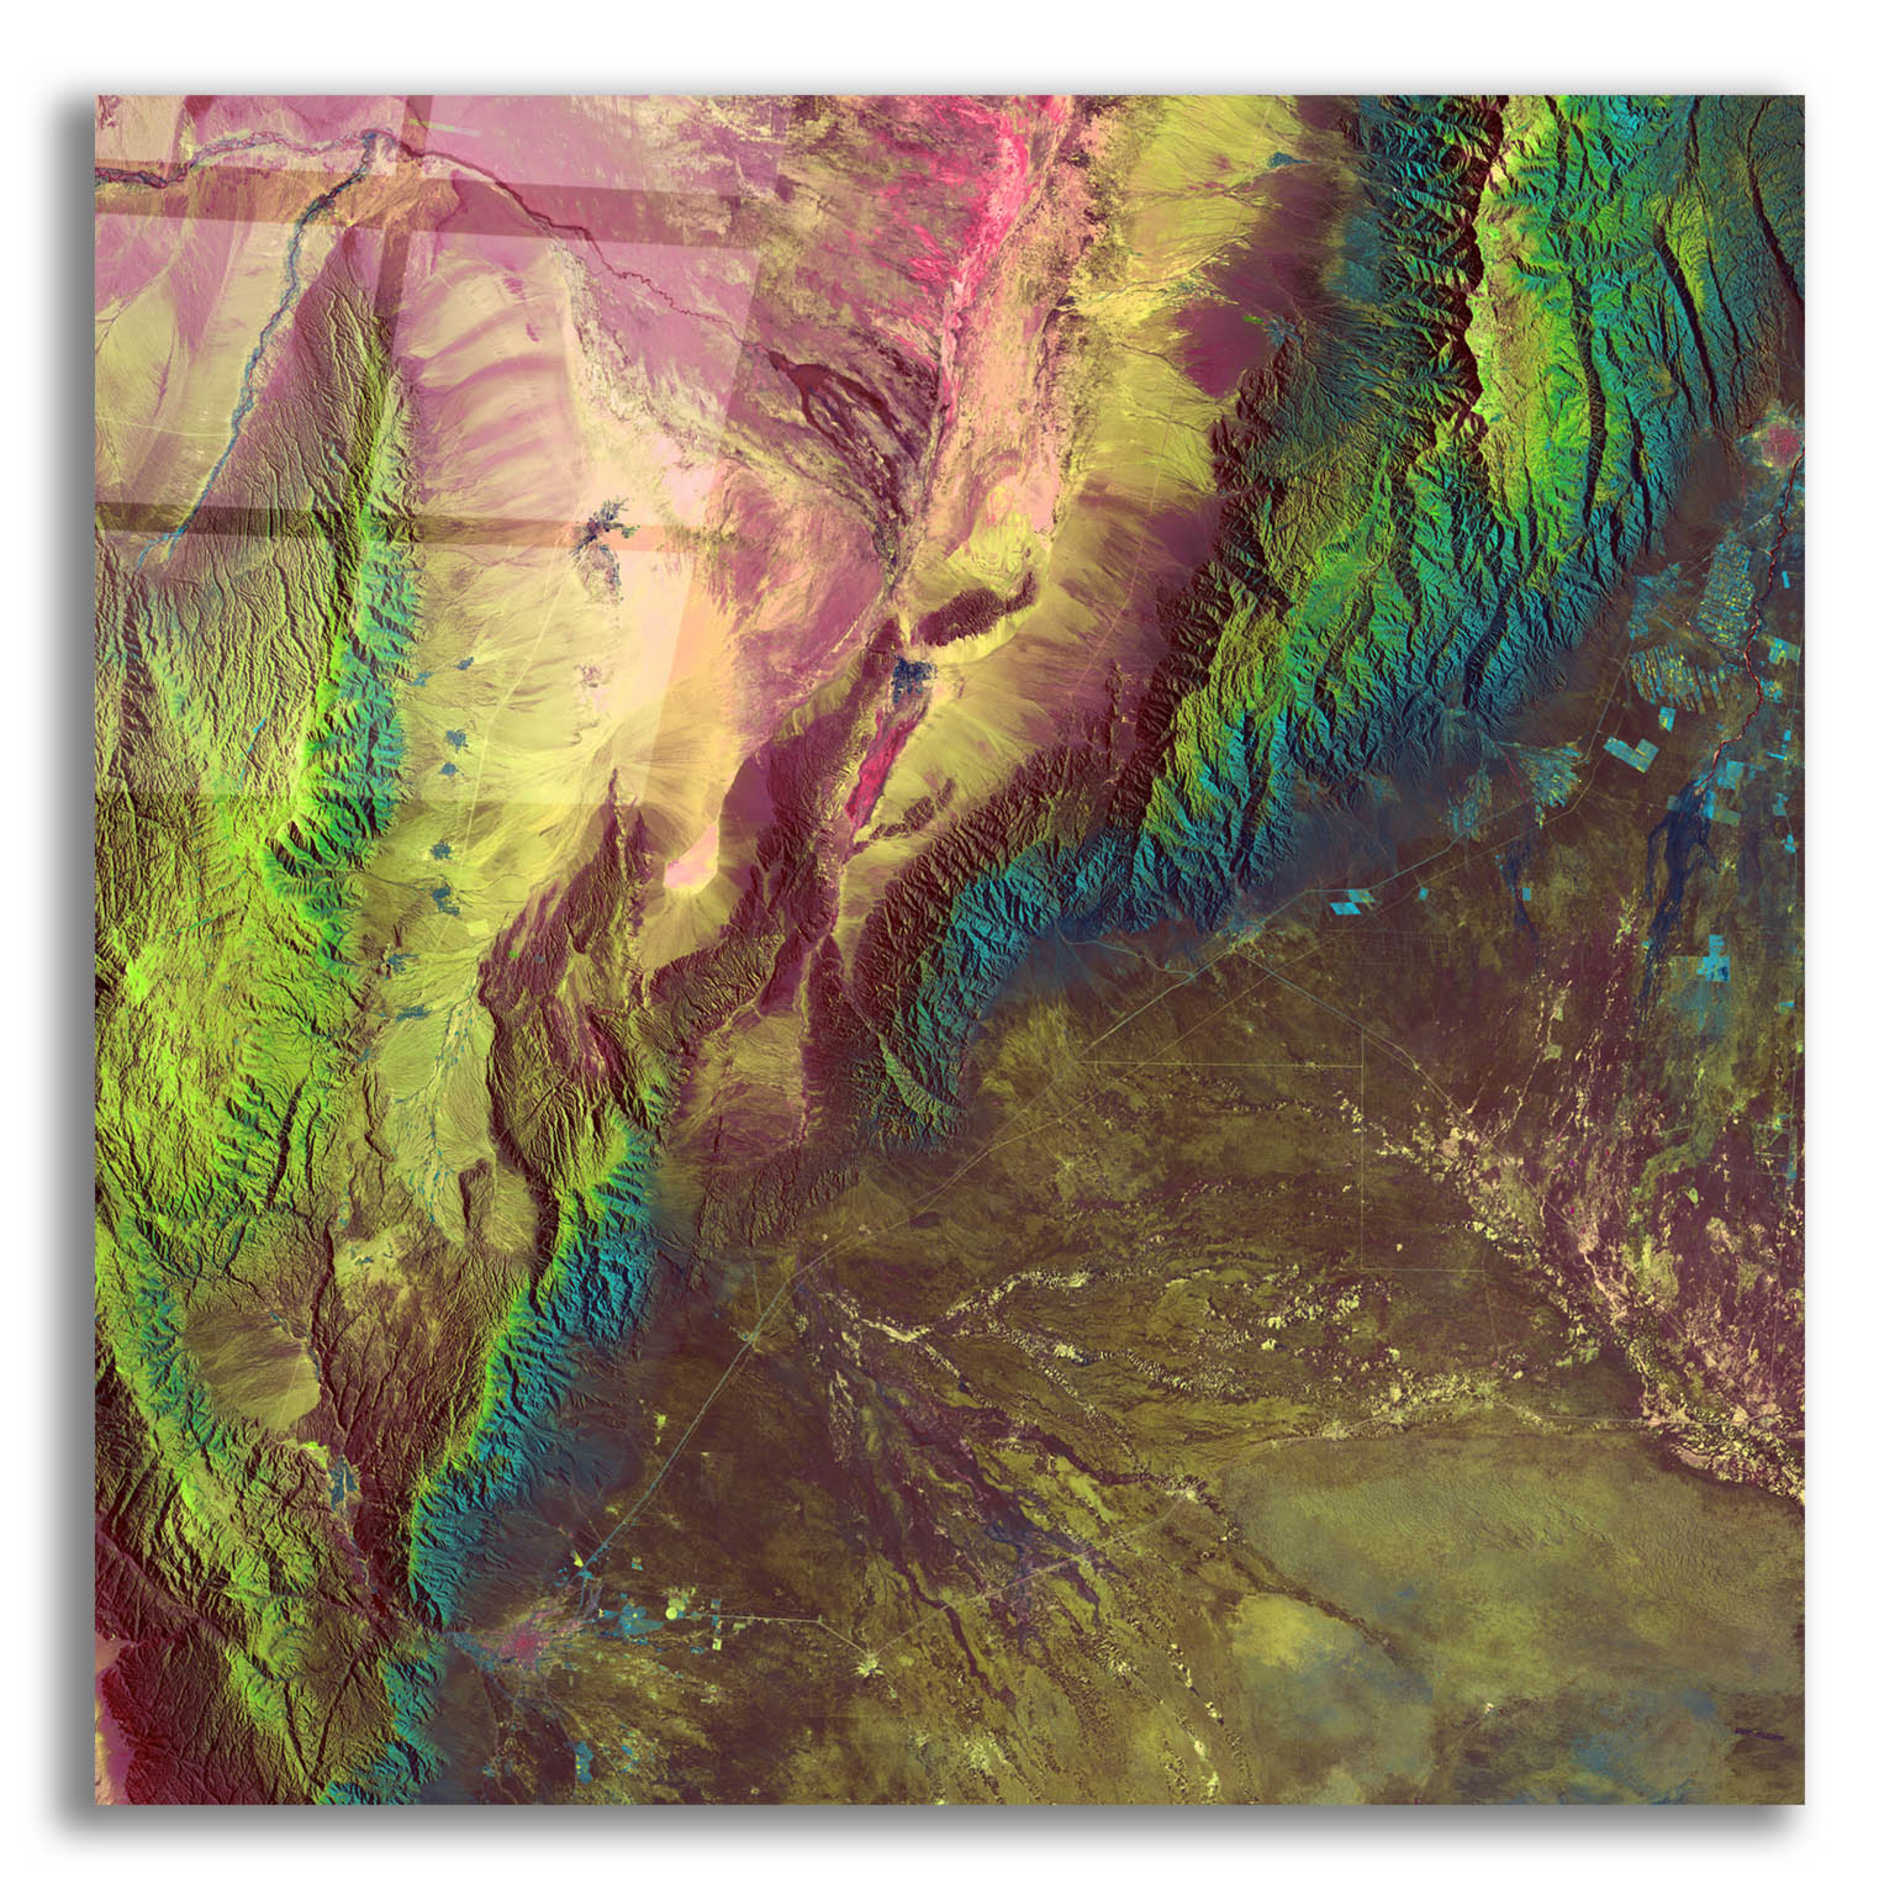 Epic Art 'Earth as Art: Sierra de Velasco,' Acrylic Glass Wall Art,12x12x1.1x0,18x18x1.1x0,26x26x1.74x0,37x37x1.74x0